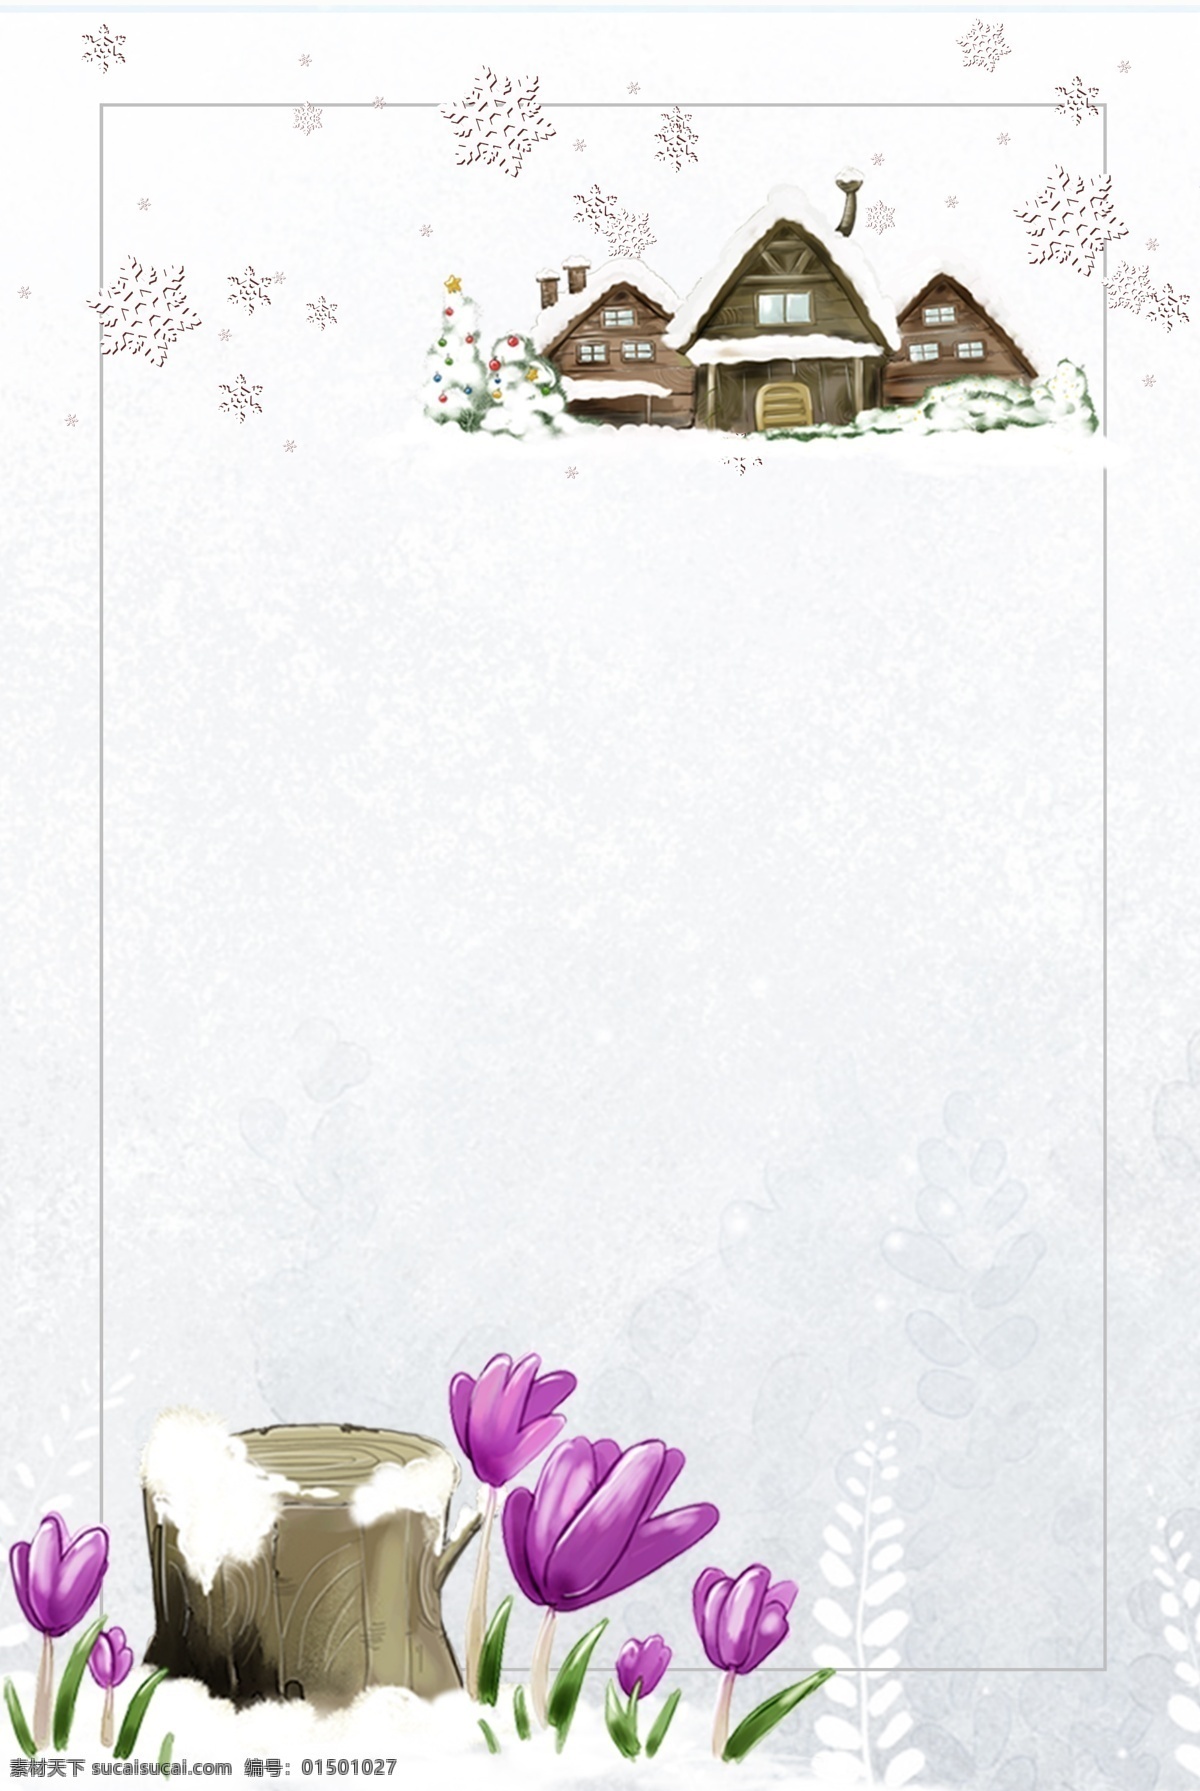 水彩 手绘 文艺 卡通 雪景 动物 背景 图 冬季 鹿子 广告 背景图